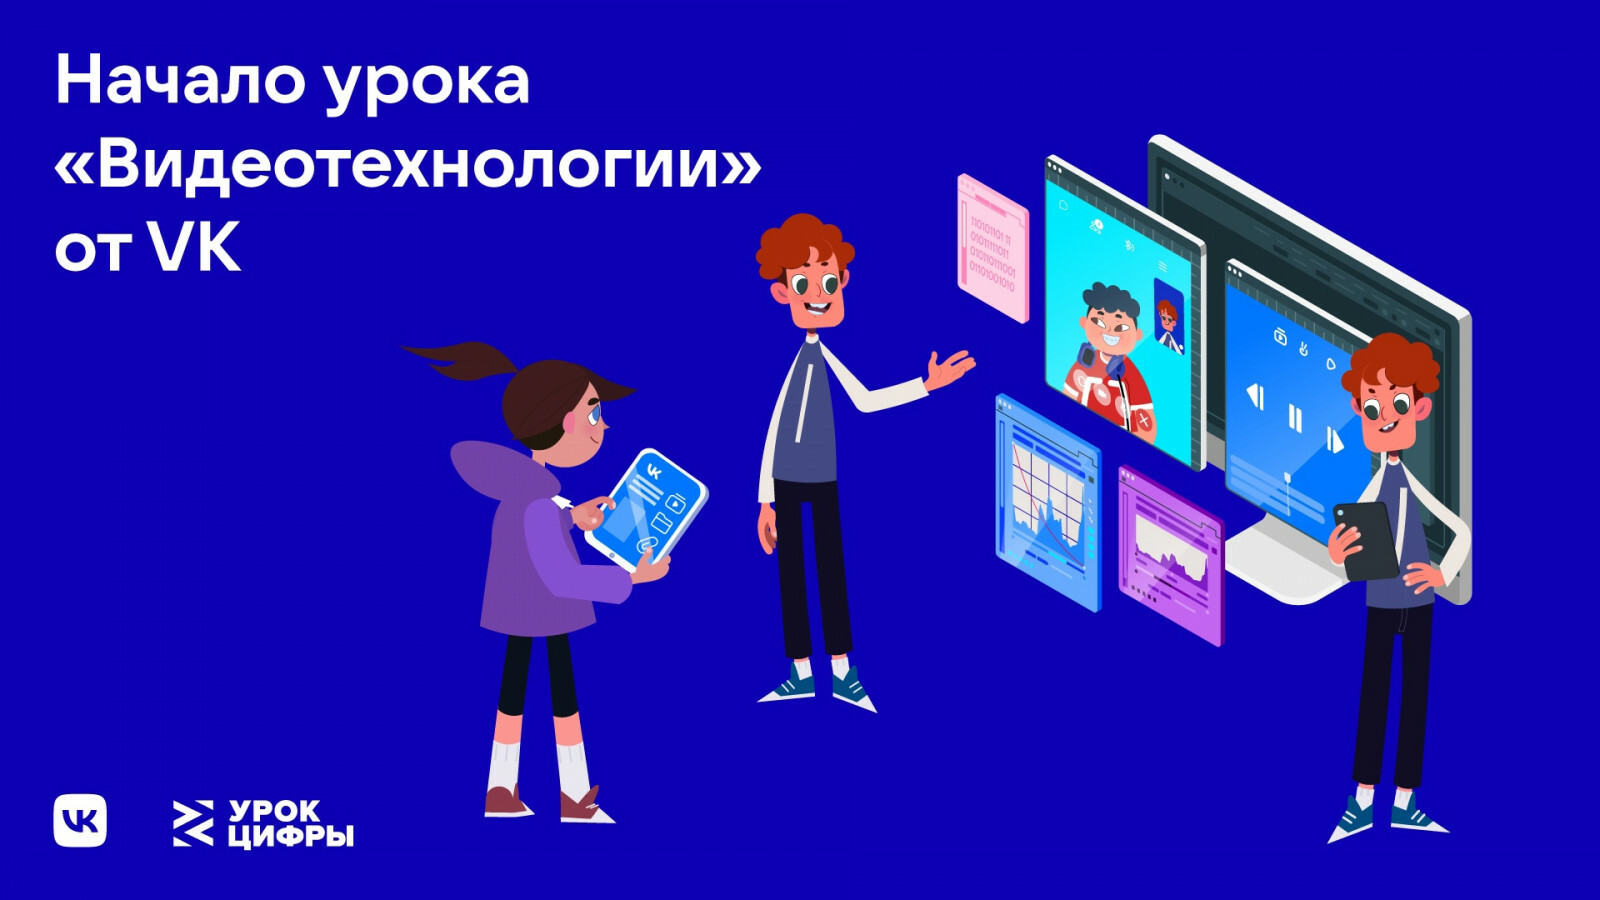 В  Башкортостане стартовал всероссийский образовательный проект «Урок Цифры» о видеотехнологиях